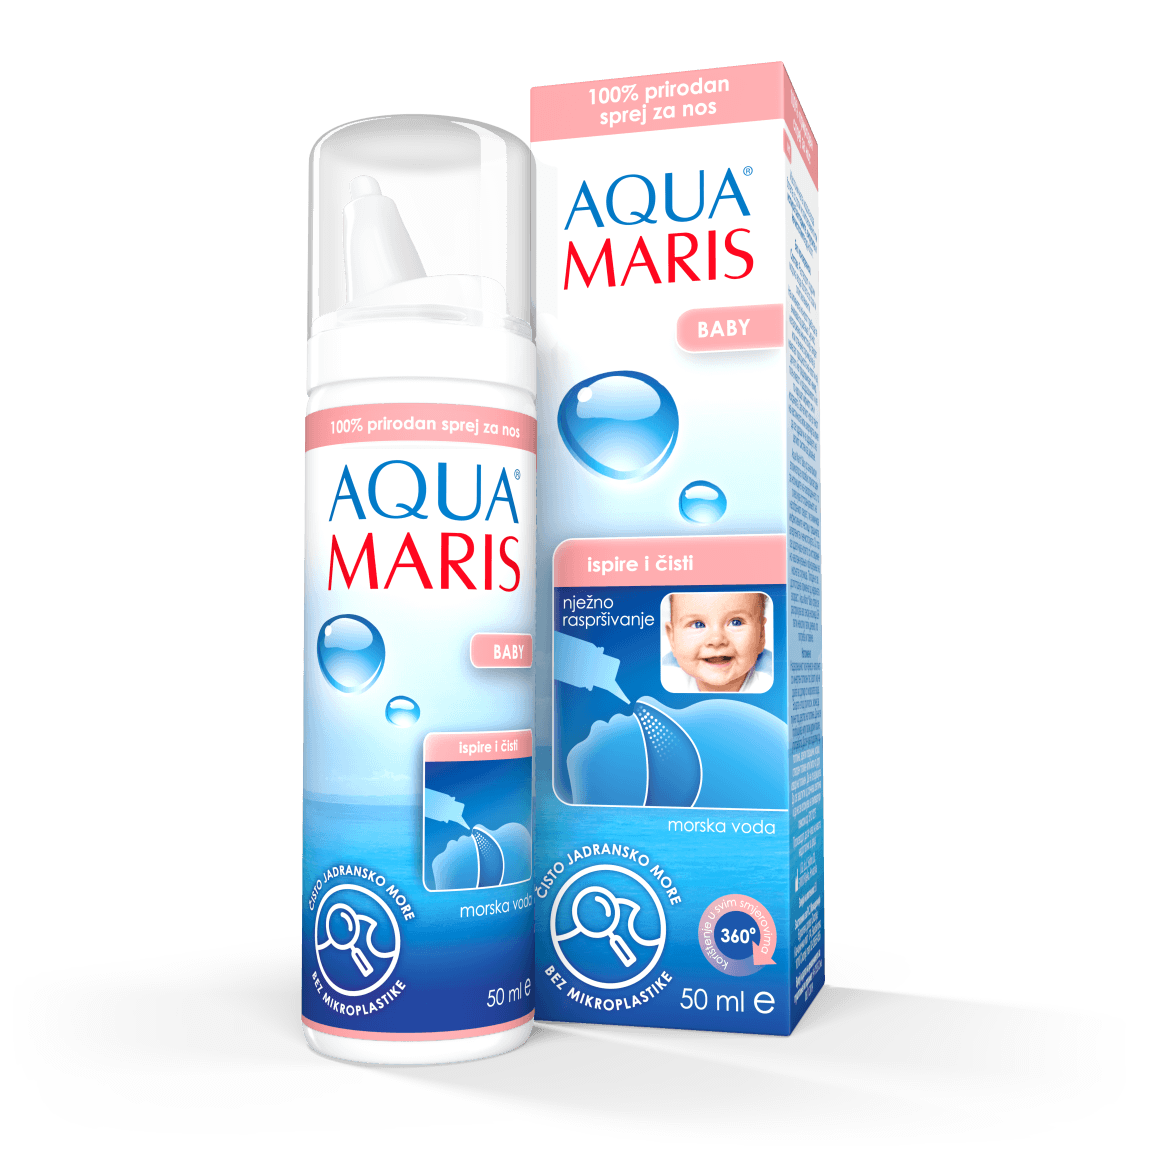 Aqua Maris Baby spray